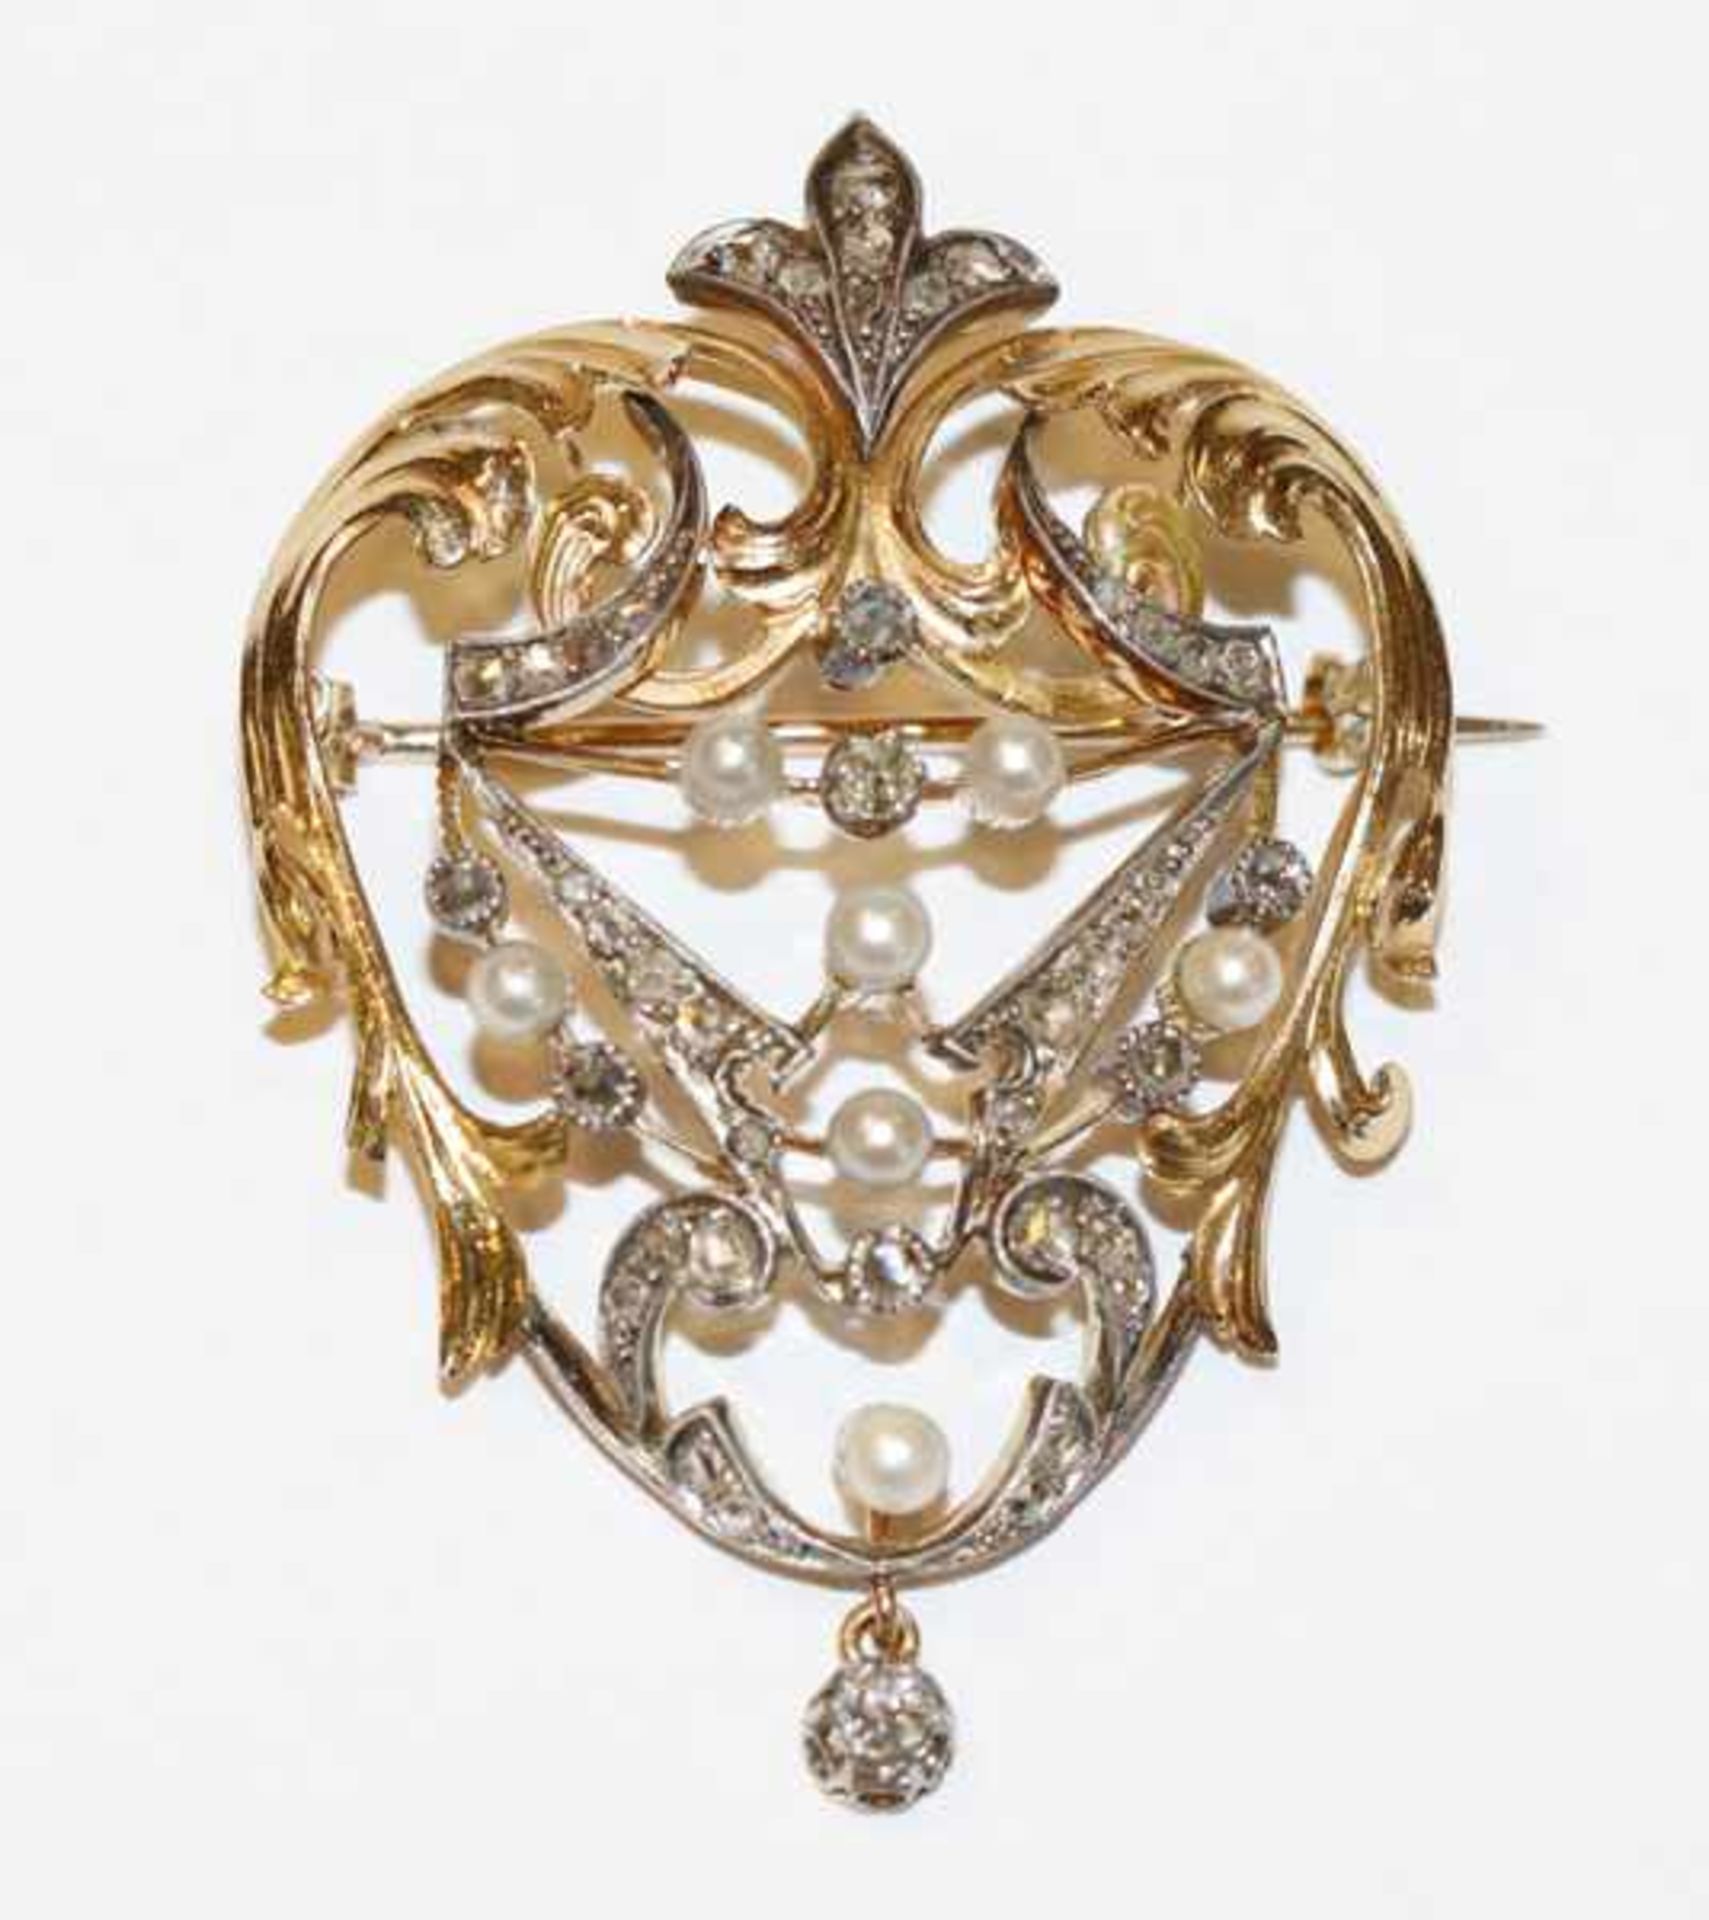 Dekorative 18 k Gelbgold/Silber Brosche mit Perlen und Diamanten, 19. Jahrhundert, 20,5 gr., B 4,5